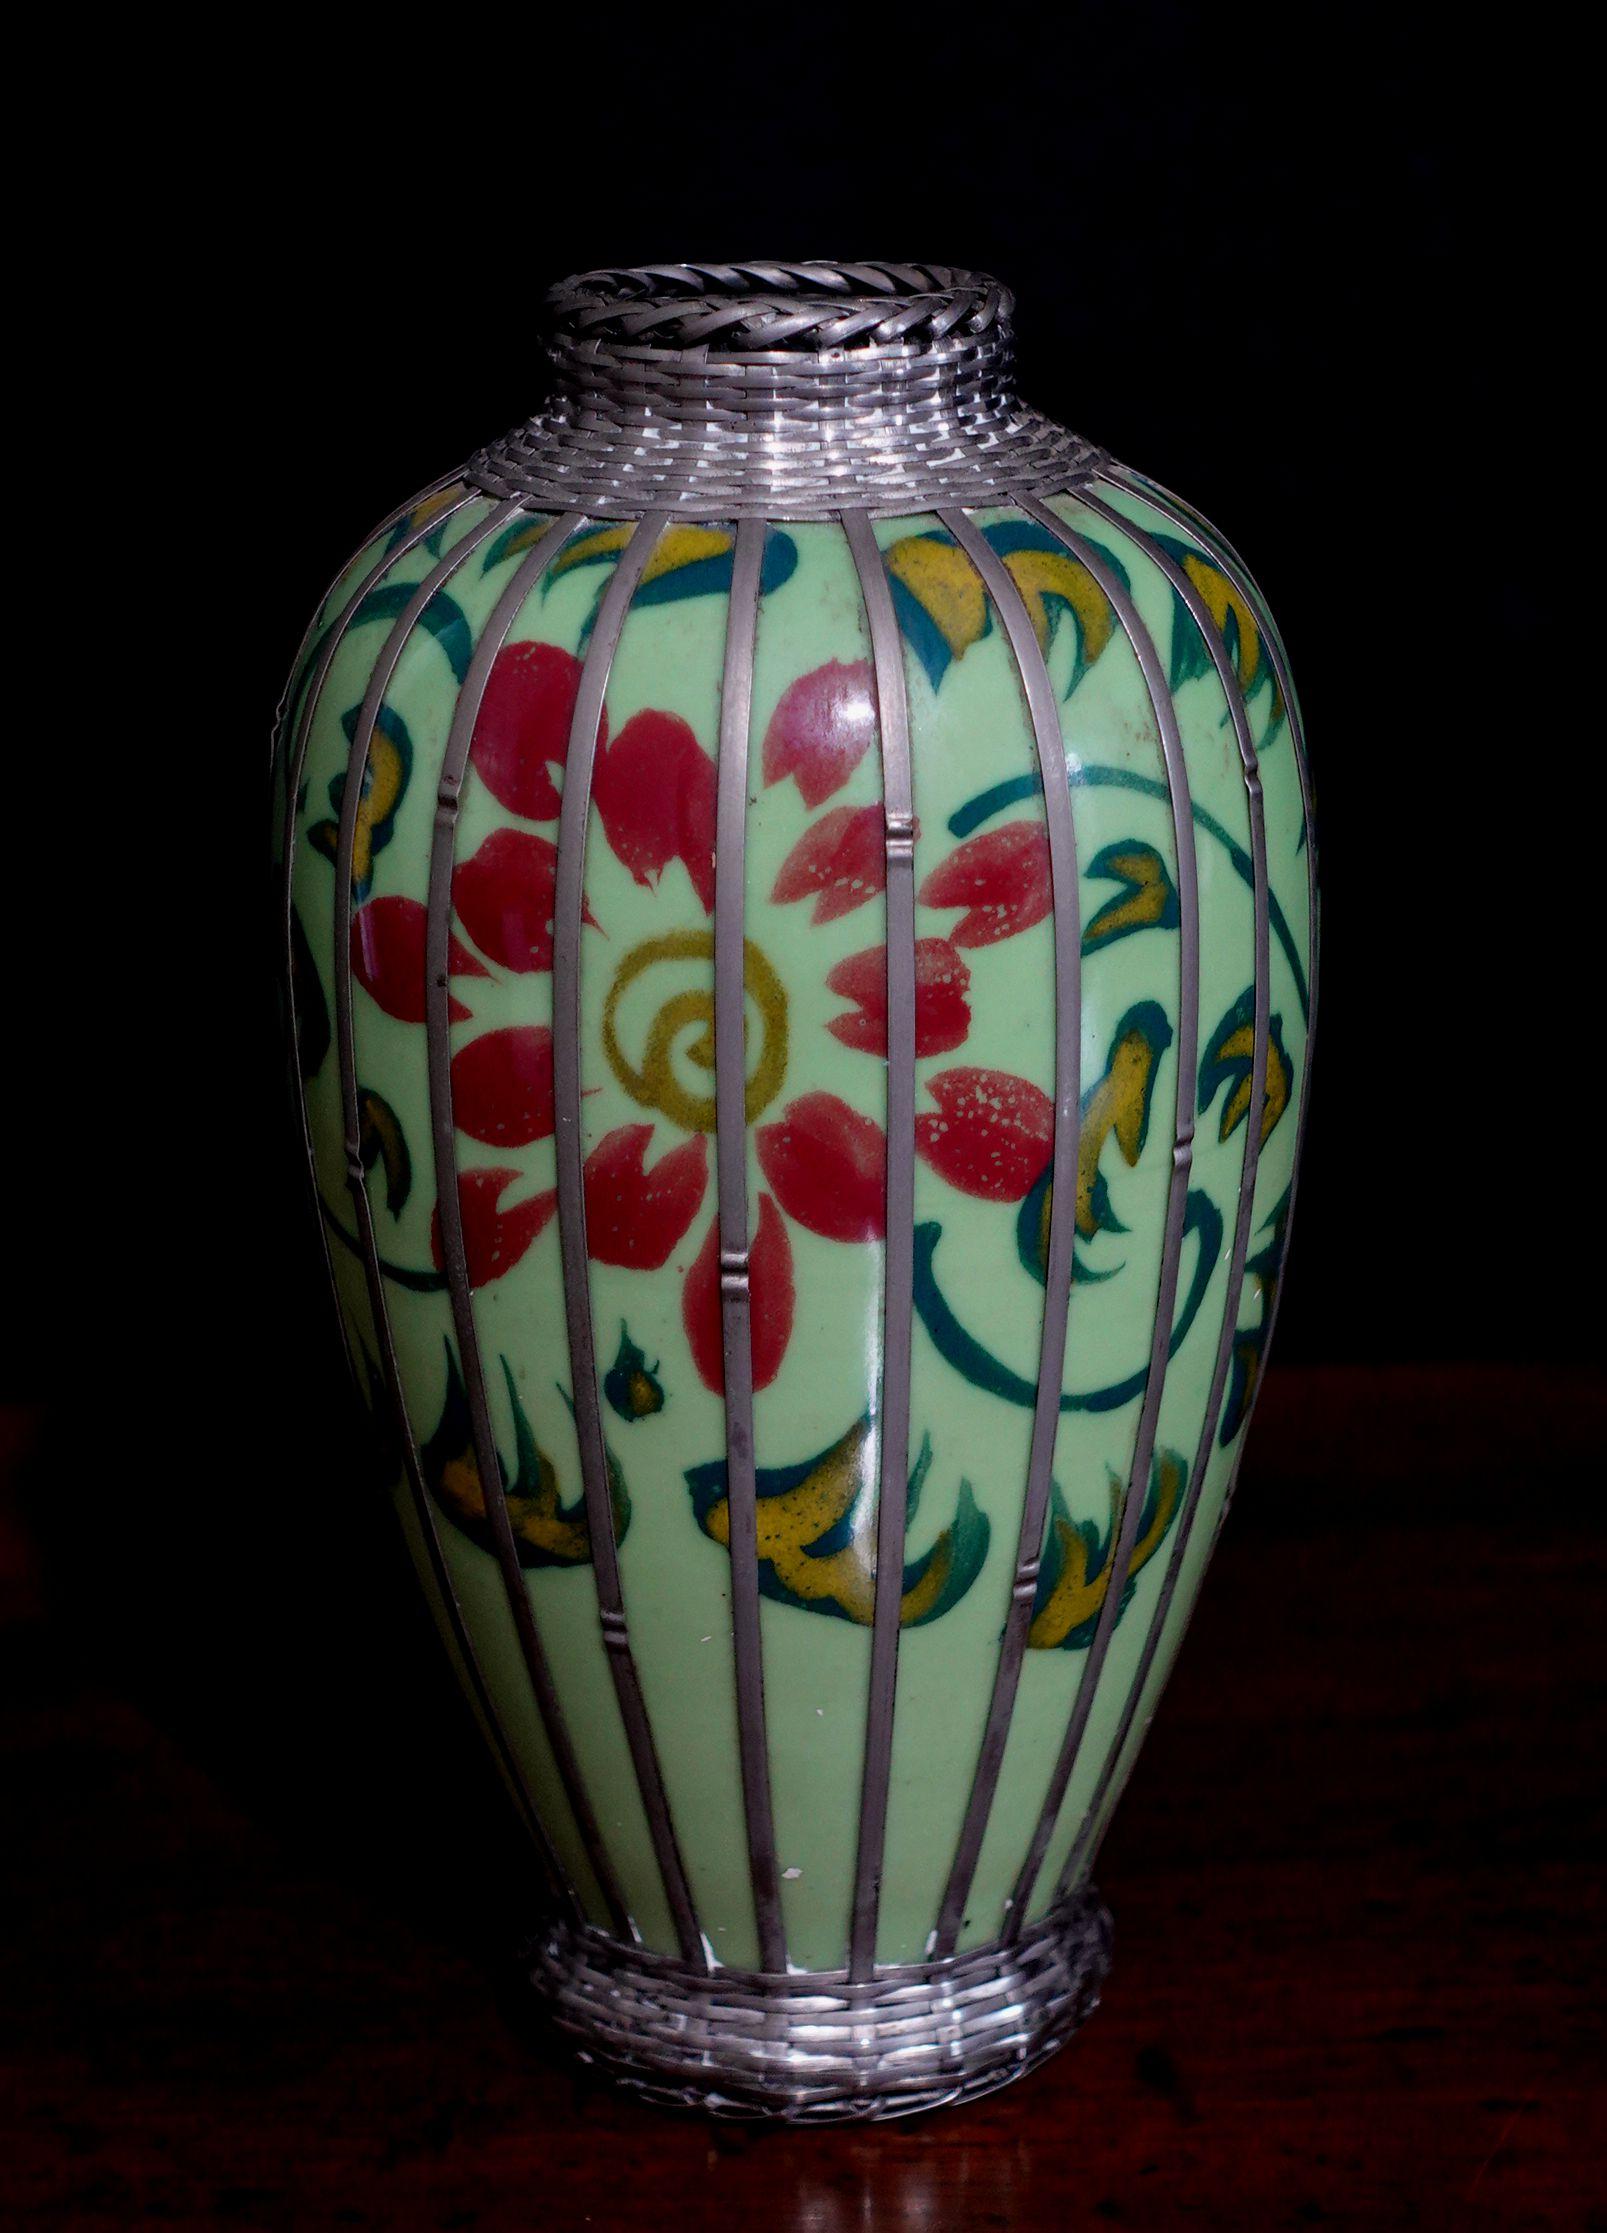 Vintage Japanese celadon glazed porcelain vase has a hand-painted floral design with basket weave silver overlay design. Measures approx. 6 1/8